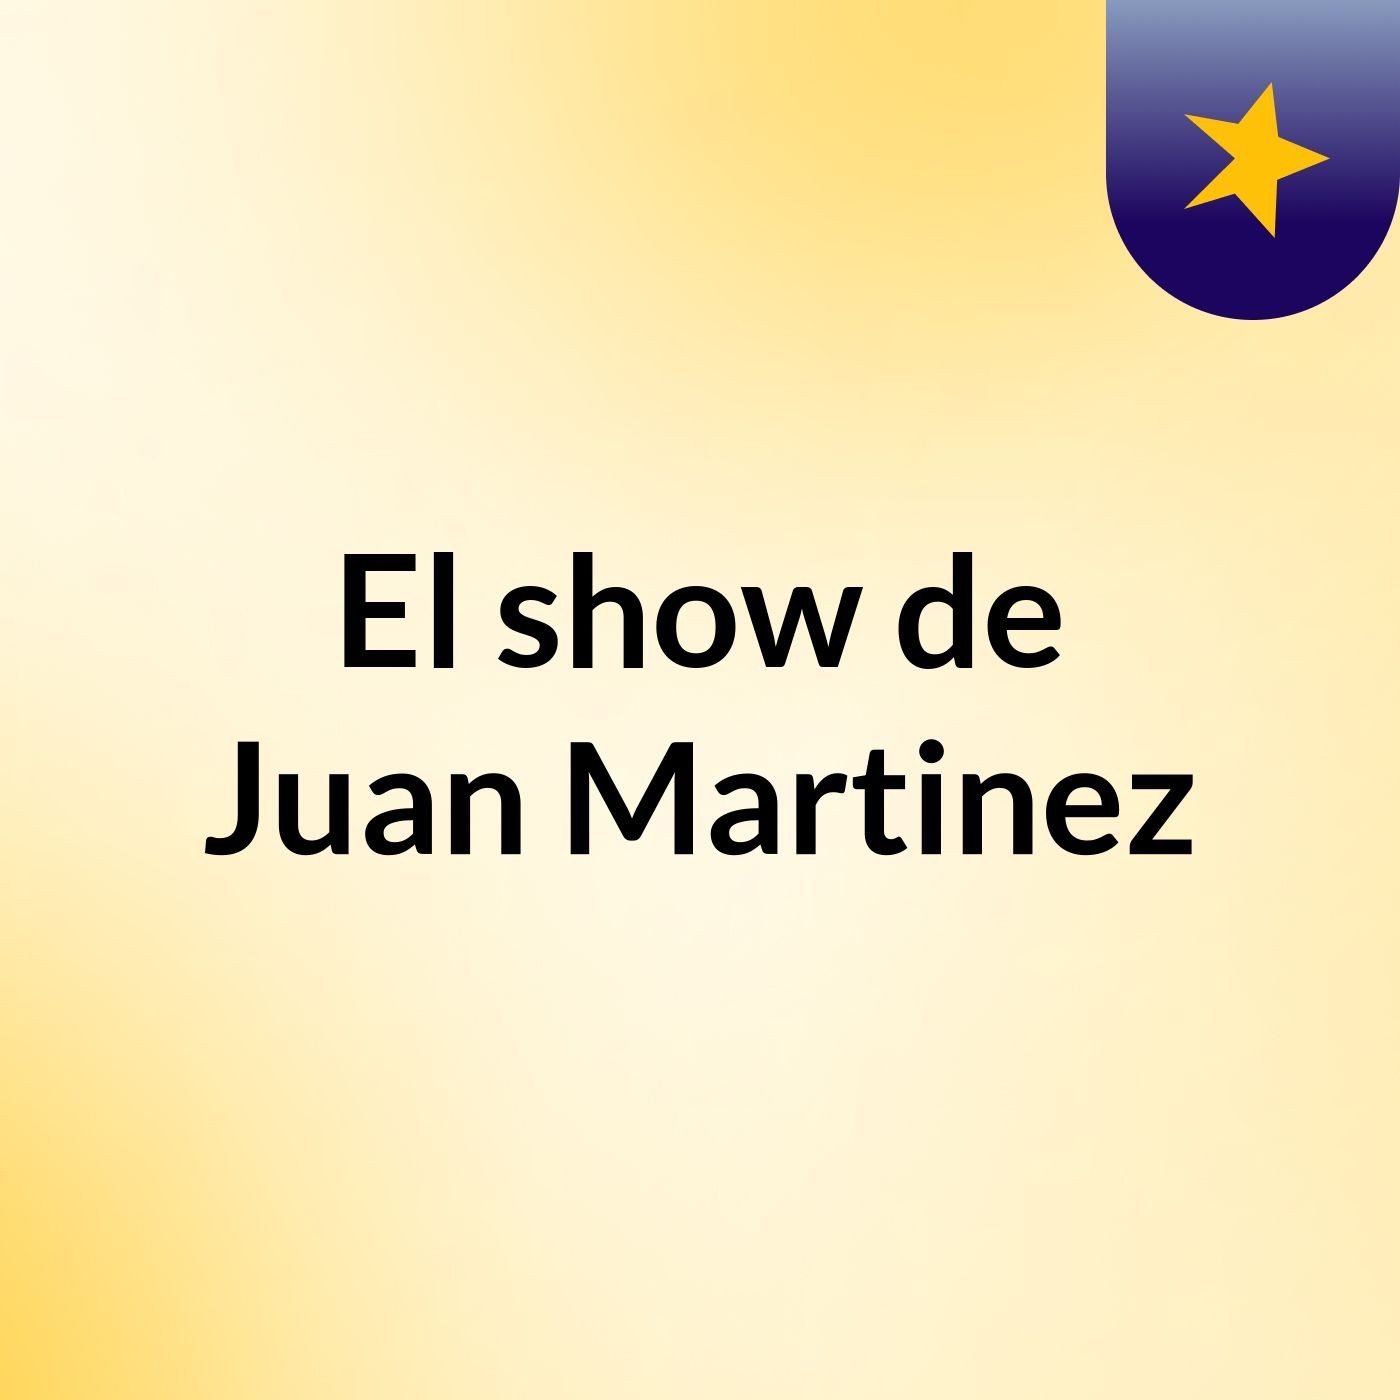 Episodio 3 - El show de Juan Martinez